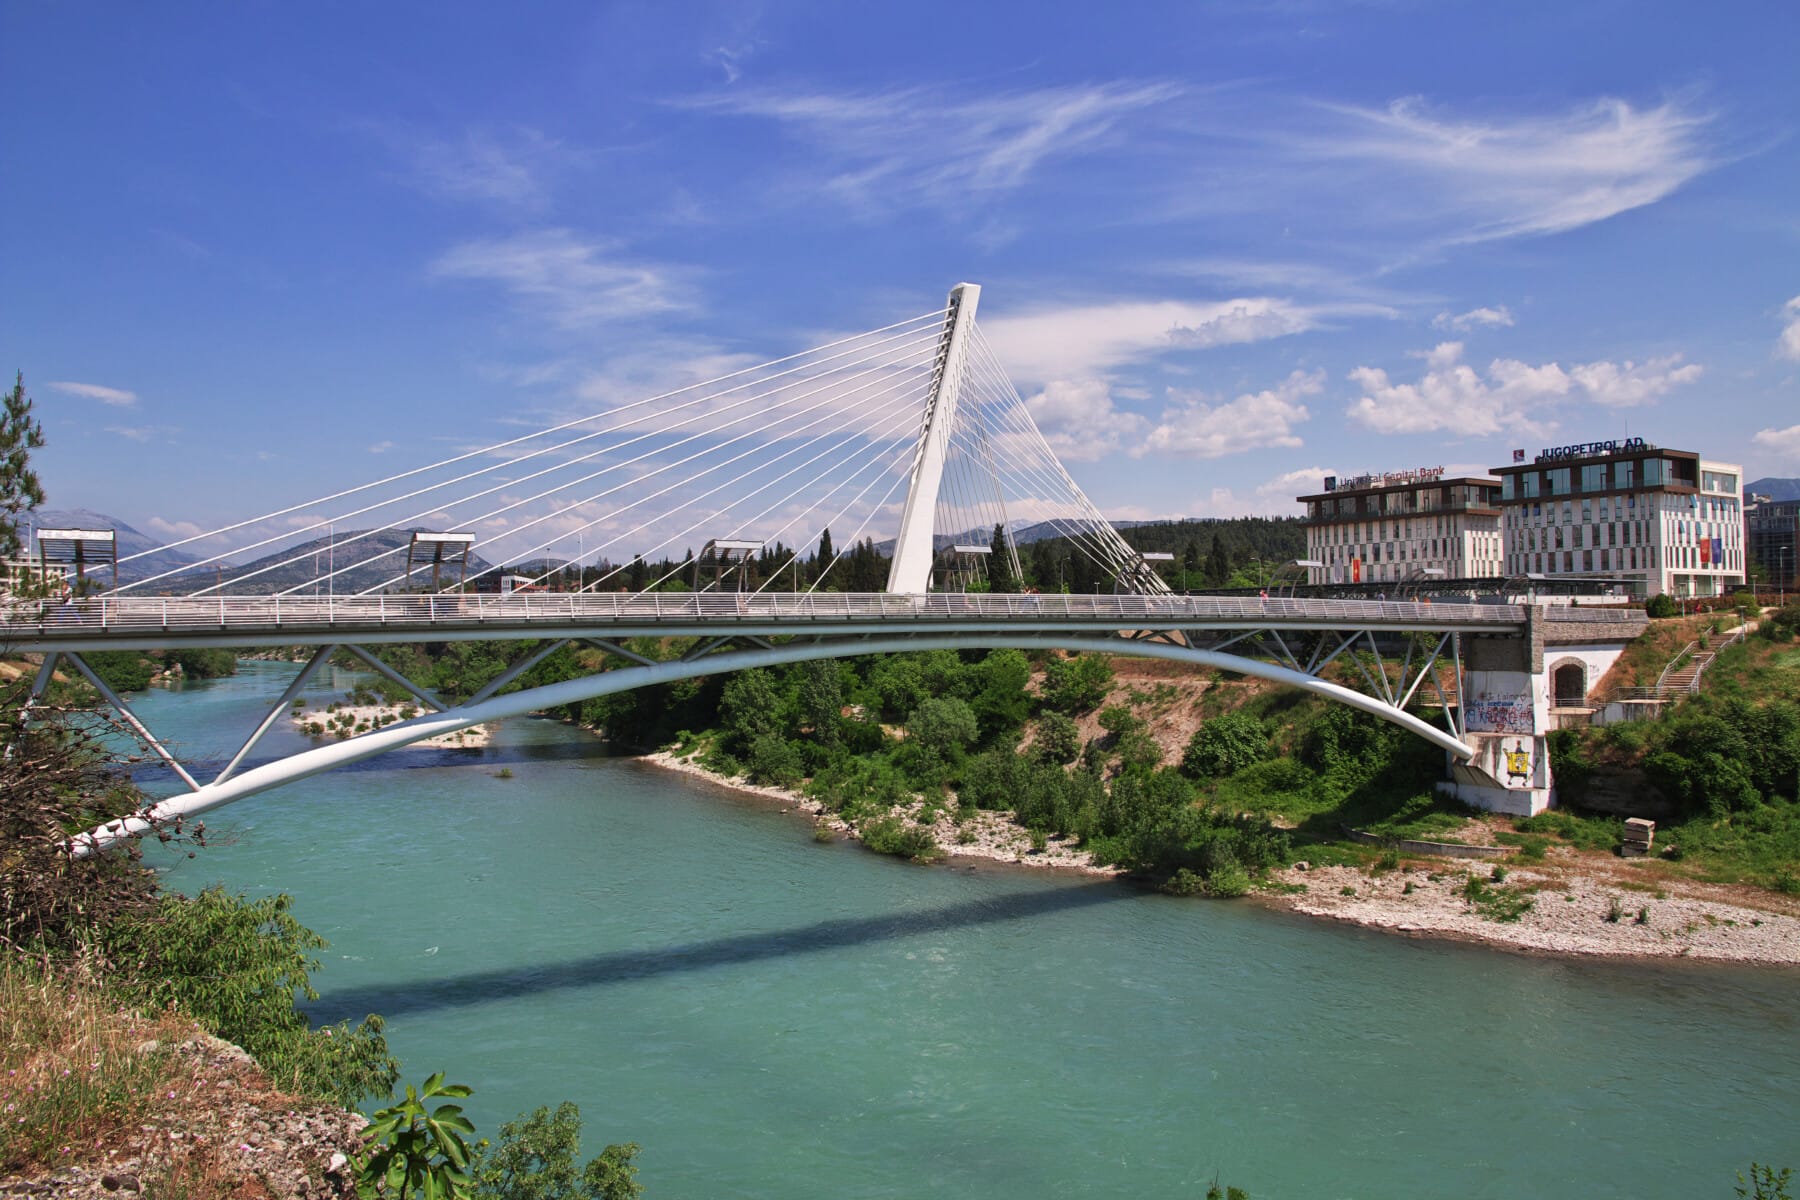 The bridge in Podgorica city, Montenegro